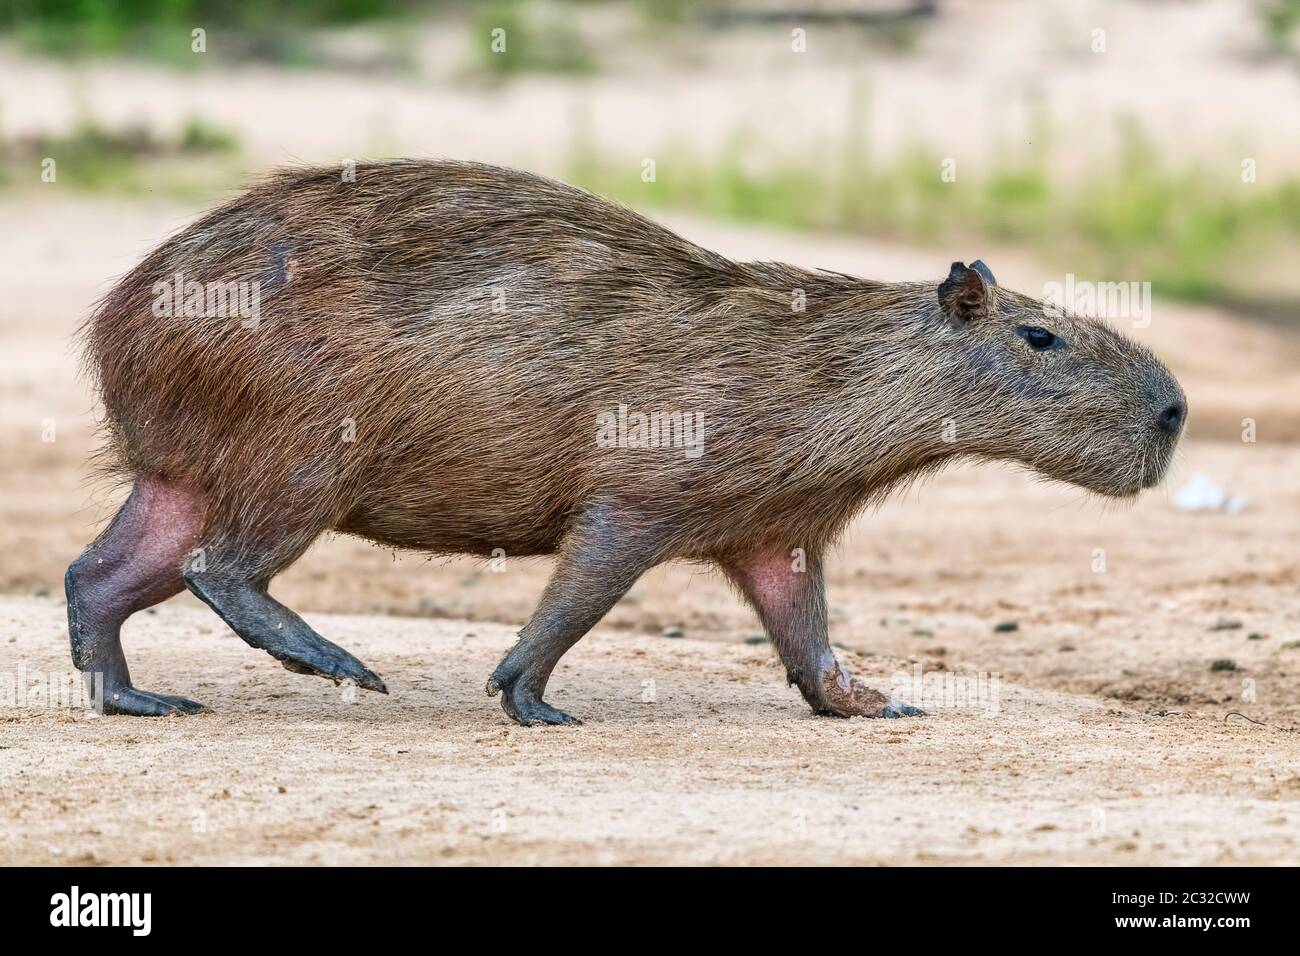 Capybara oder Wasserschwein (Hydrochoerus hydrochaeris) geht auf einer sandbank, Pantanal, Mato Grosso, Brasilien Foto Stock